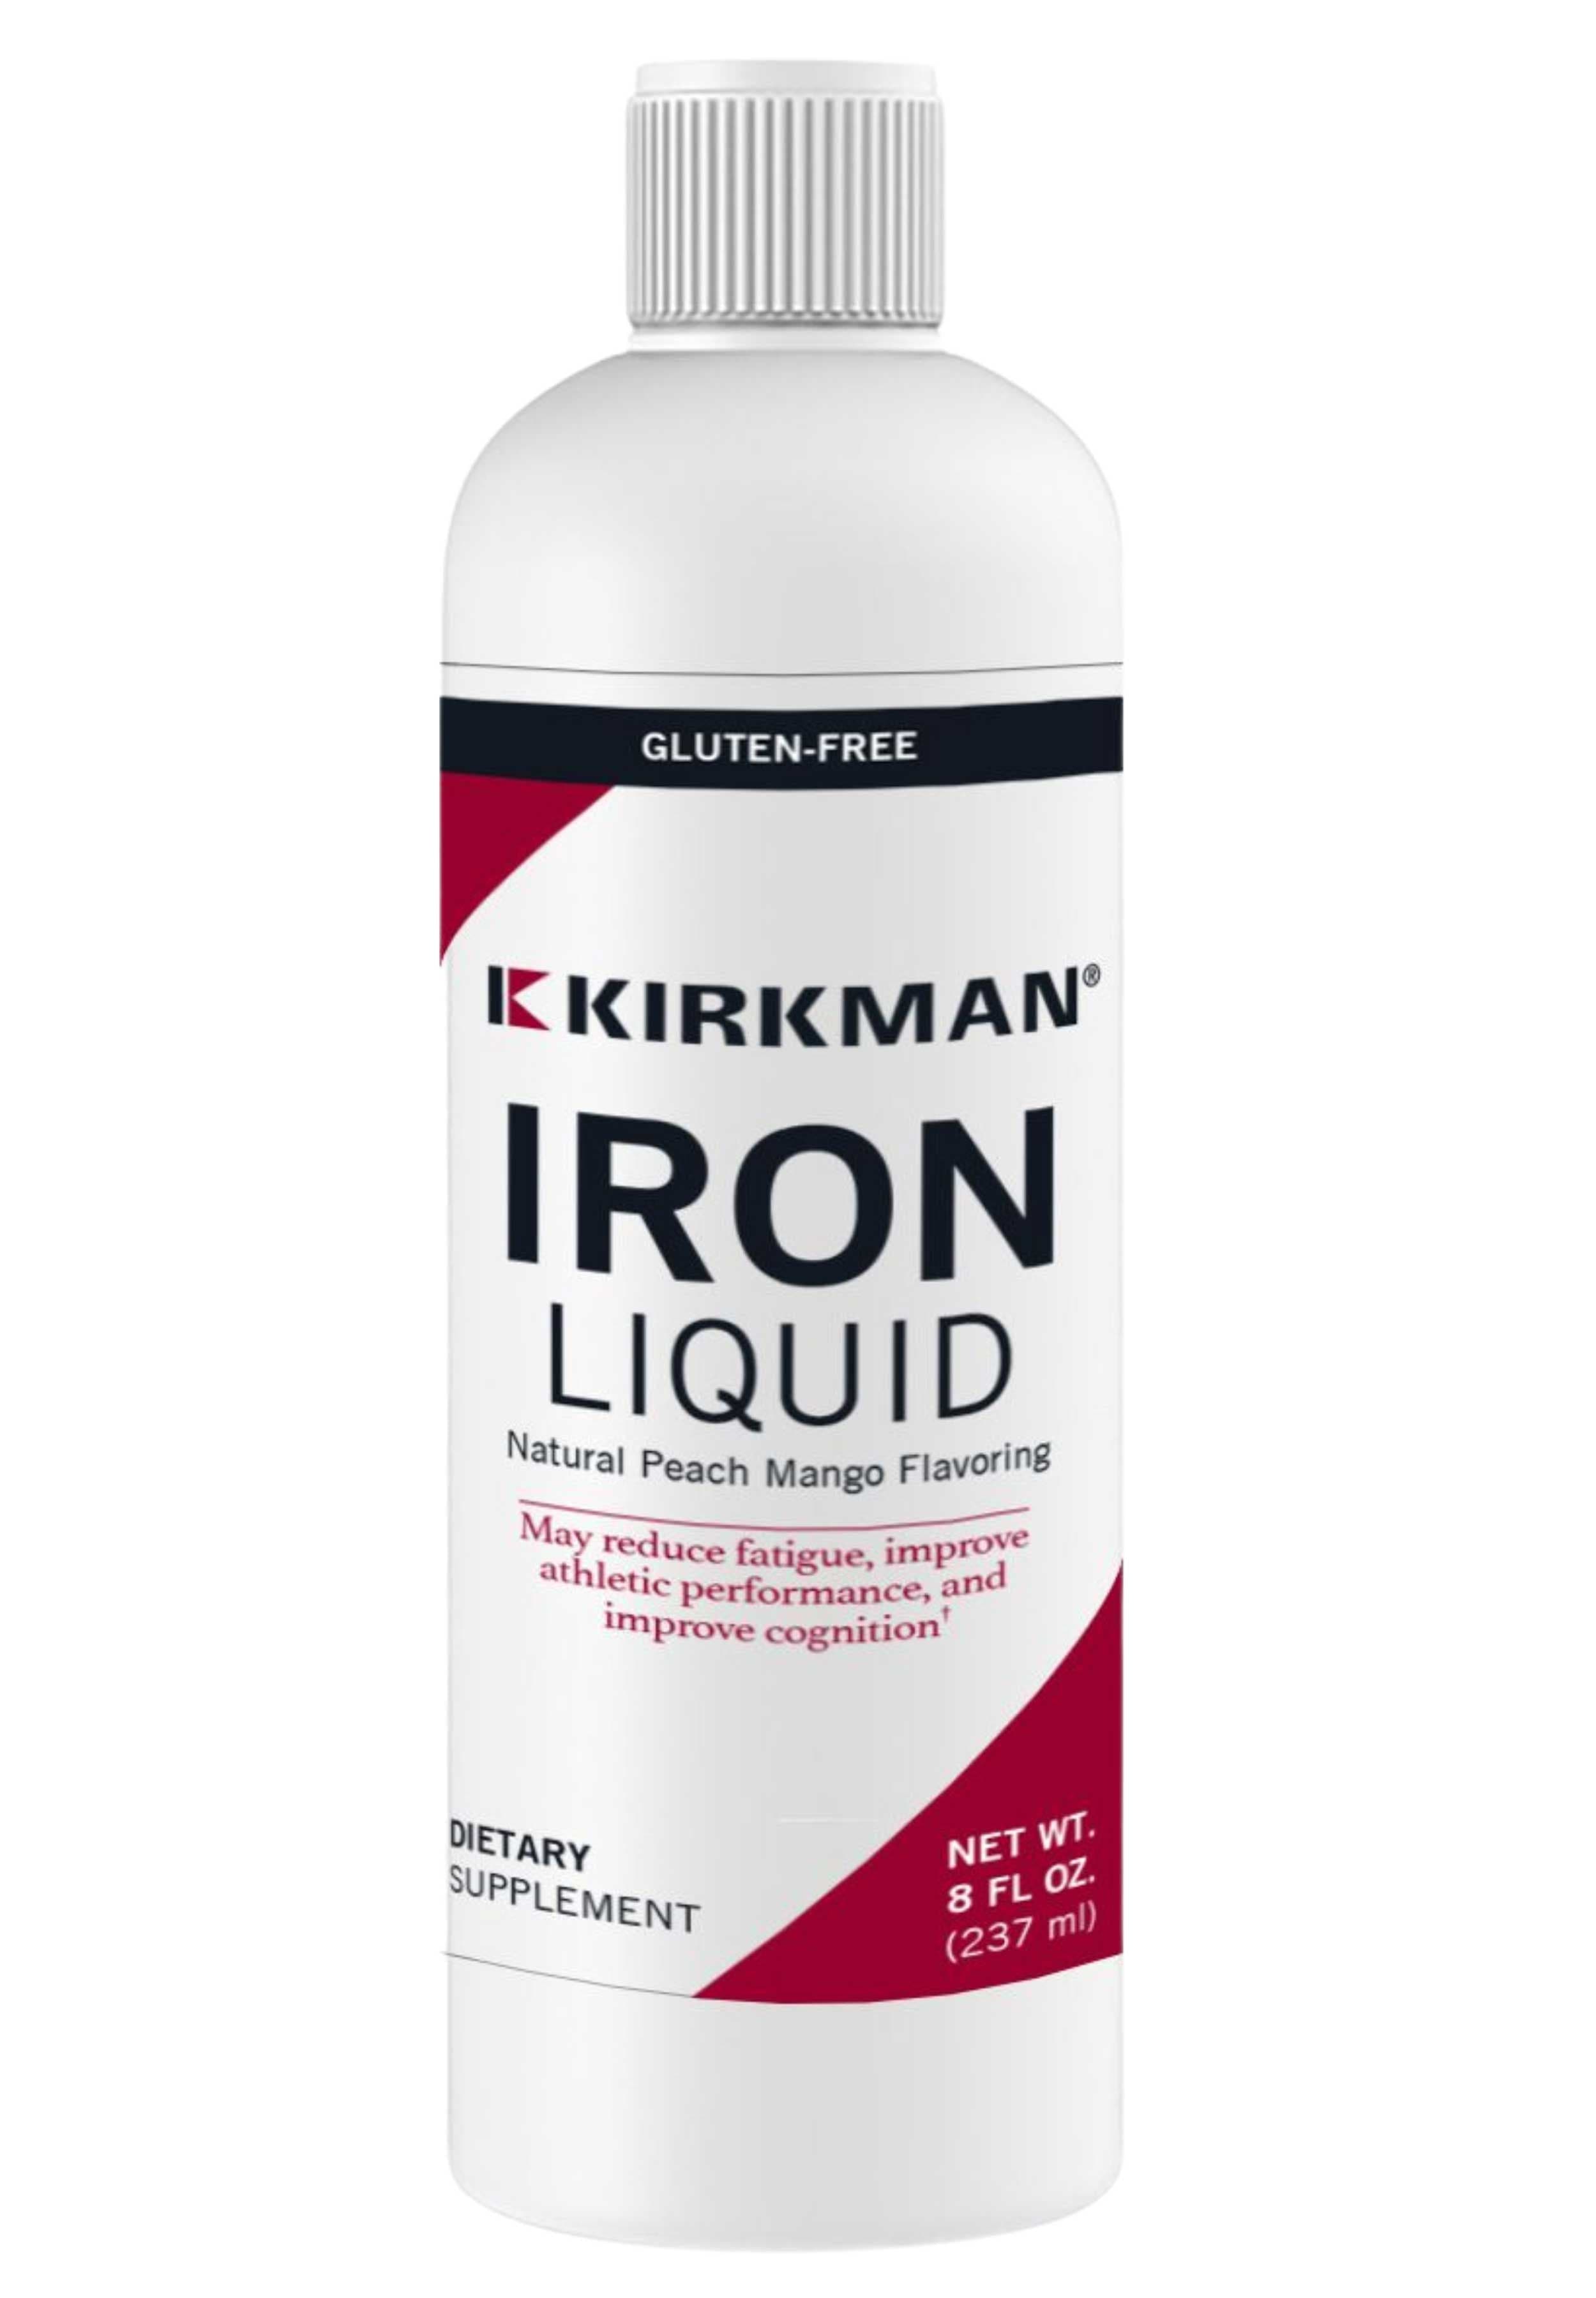 Kirkman Iron Liquid